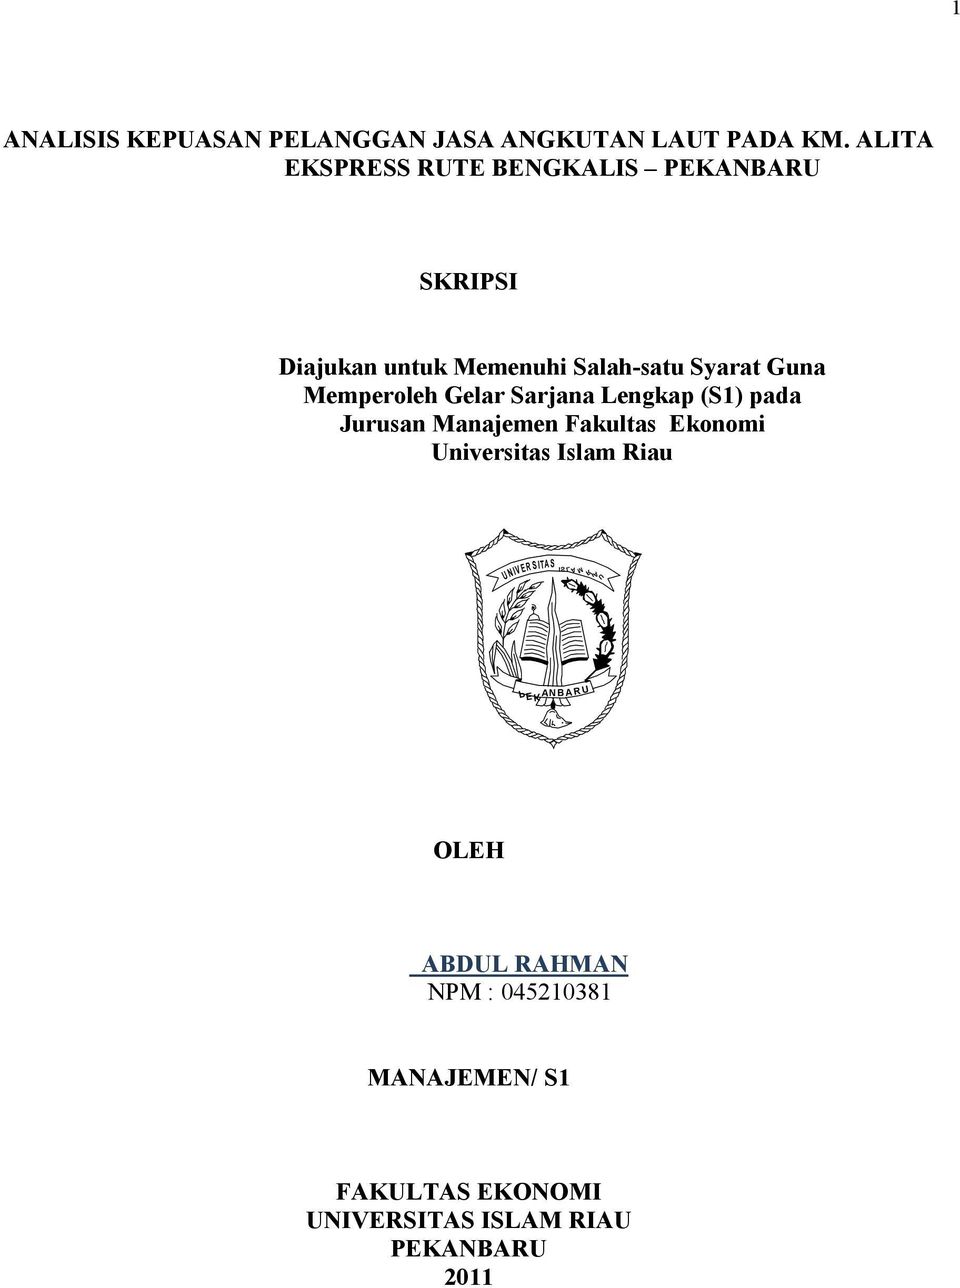 Memperoleh Gelar Sarjana Lengkap (S1) pada Jurusan Manajemen Fakultas Ekonomi Universitas Islam Riau